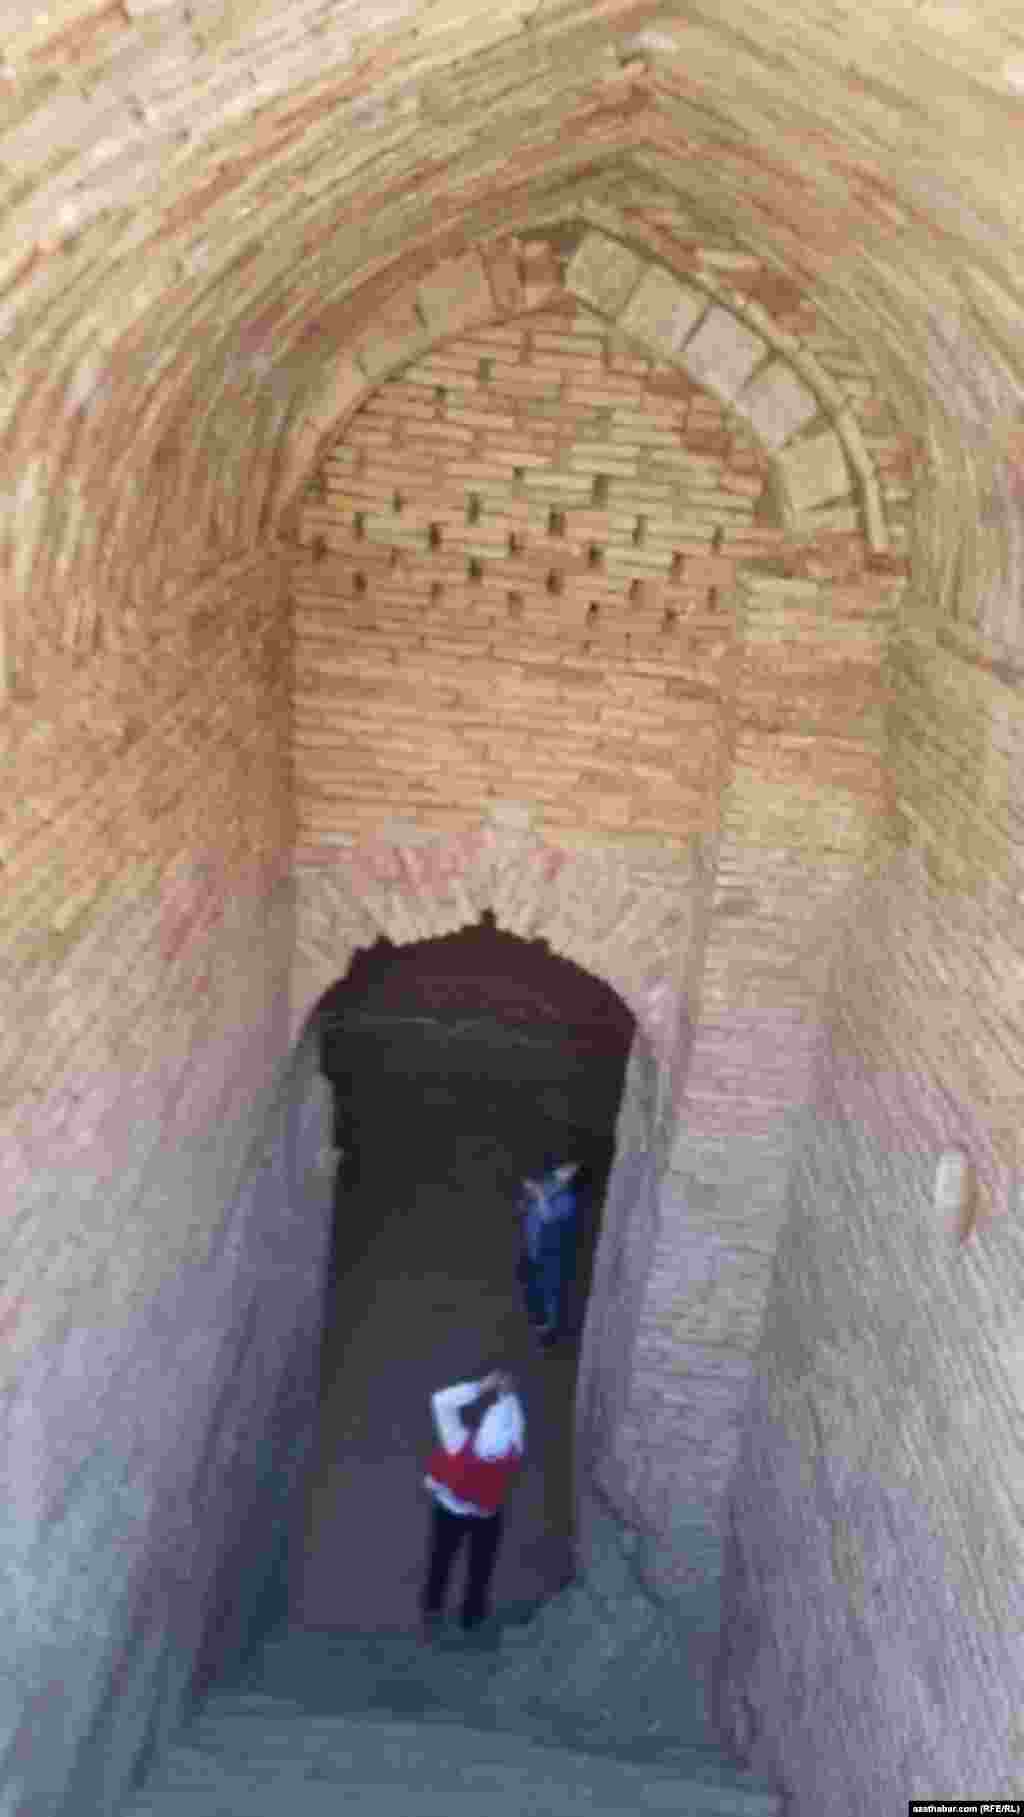 Вход в одну из двух подземных водохранилищь. Гидротехническое сооружение местные назыают сардоб.